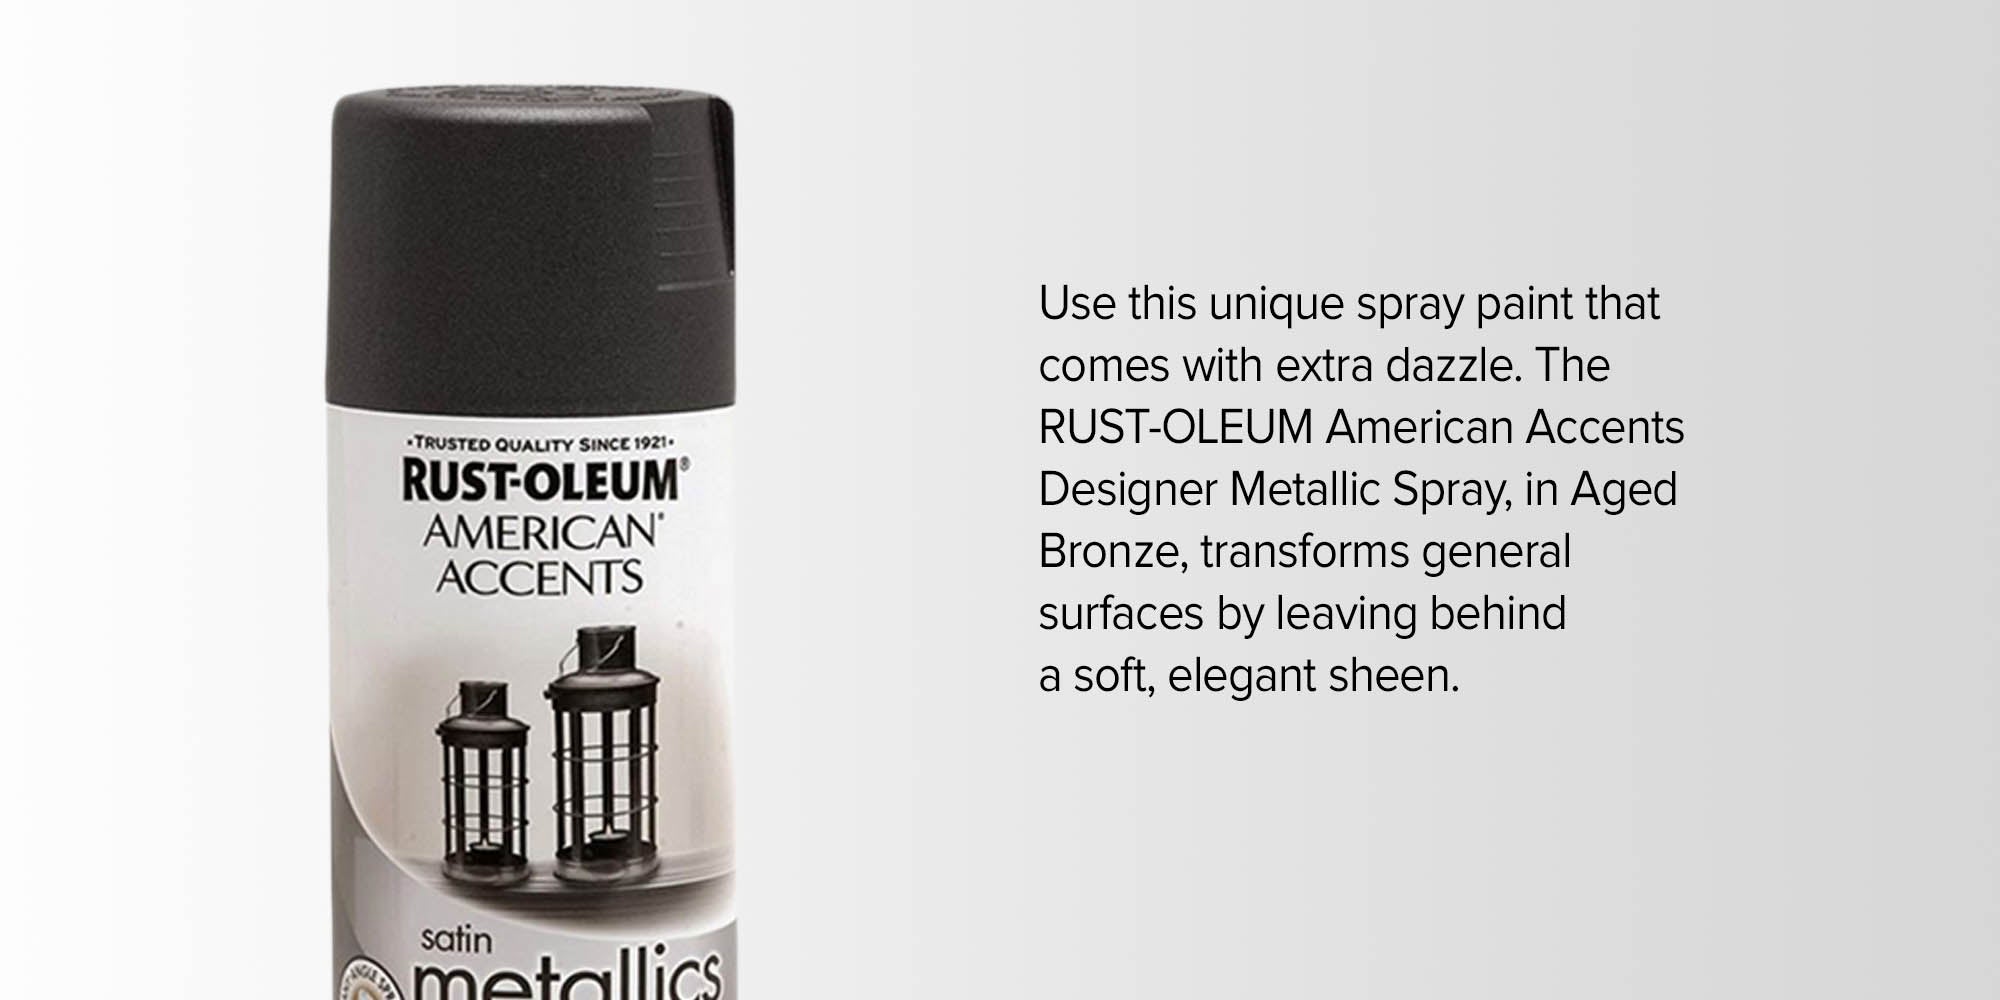 Rust-Oleum American Accents Designer Metallic Spray Paint